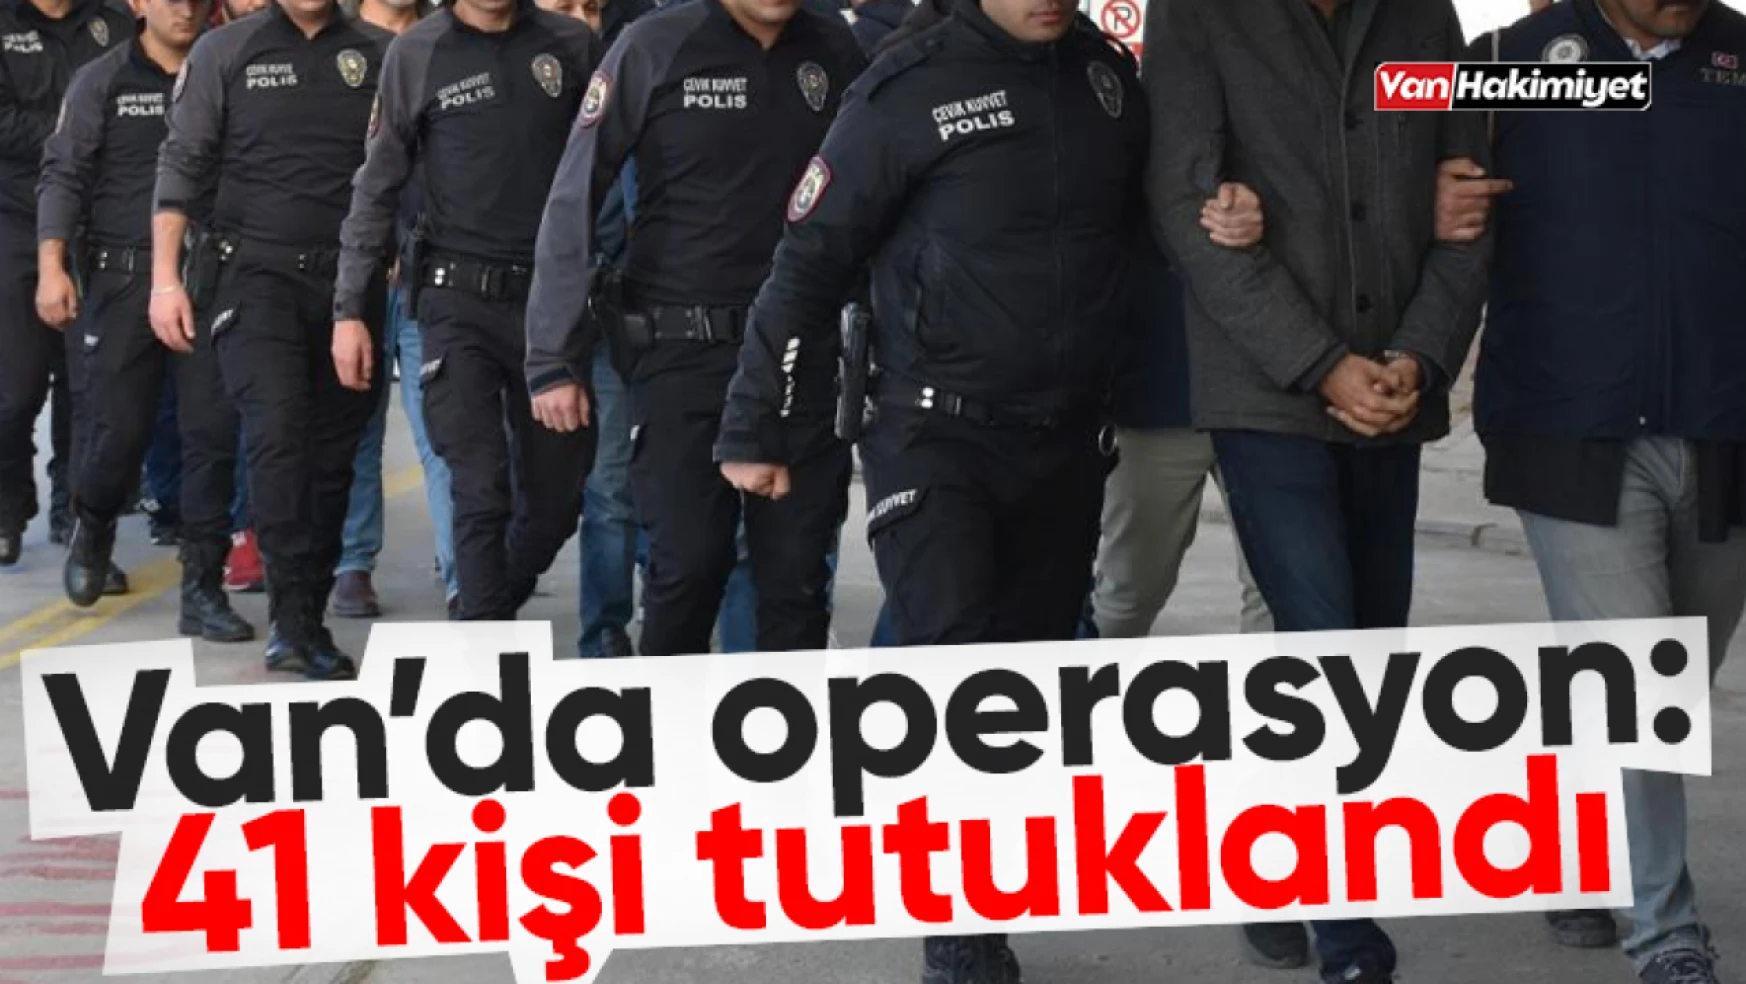 Van'da operasyon: 41 kişi tutuklandı!